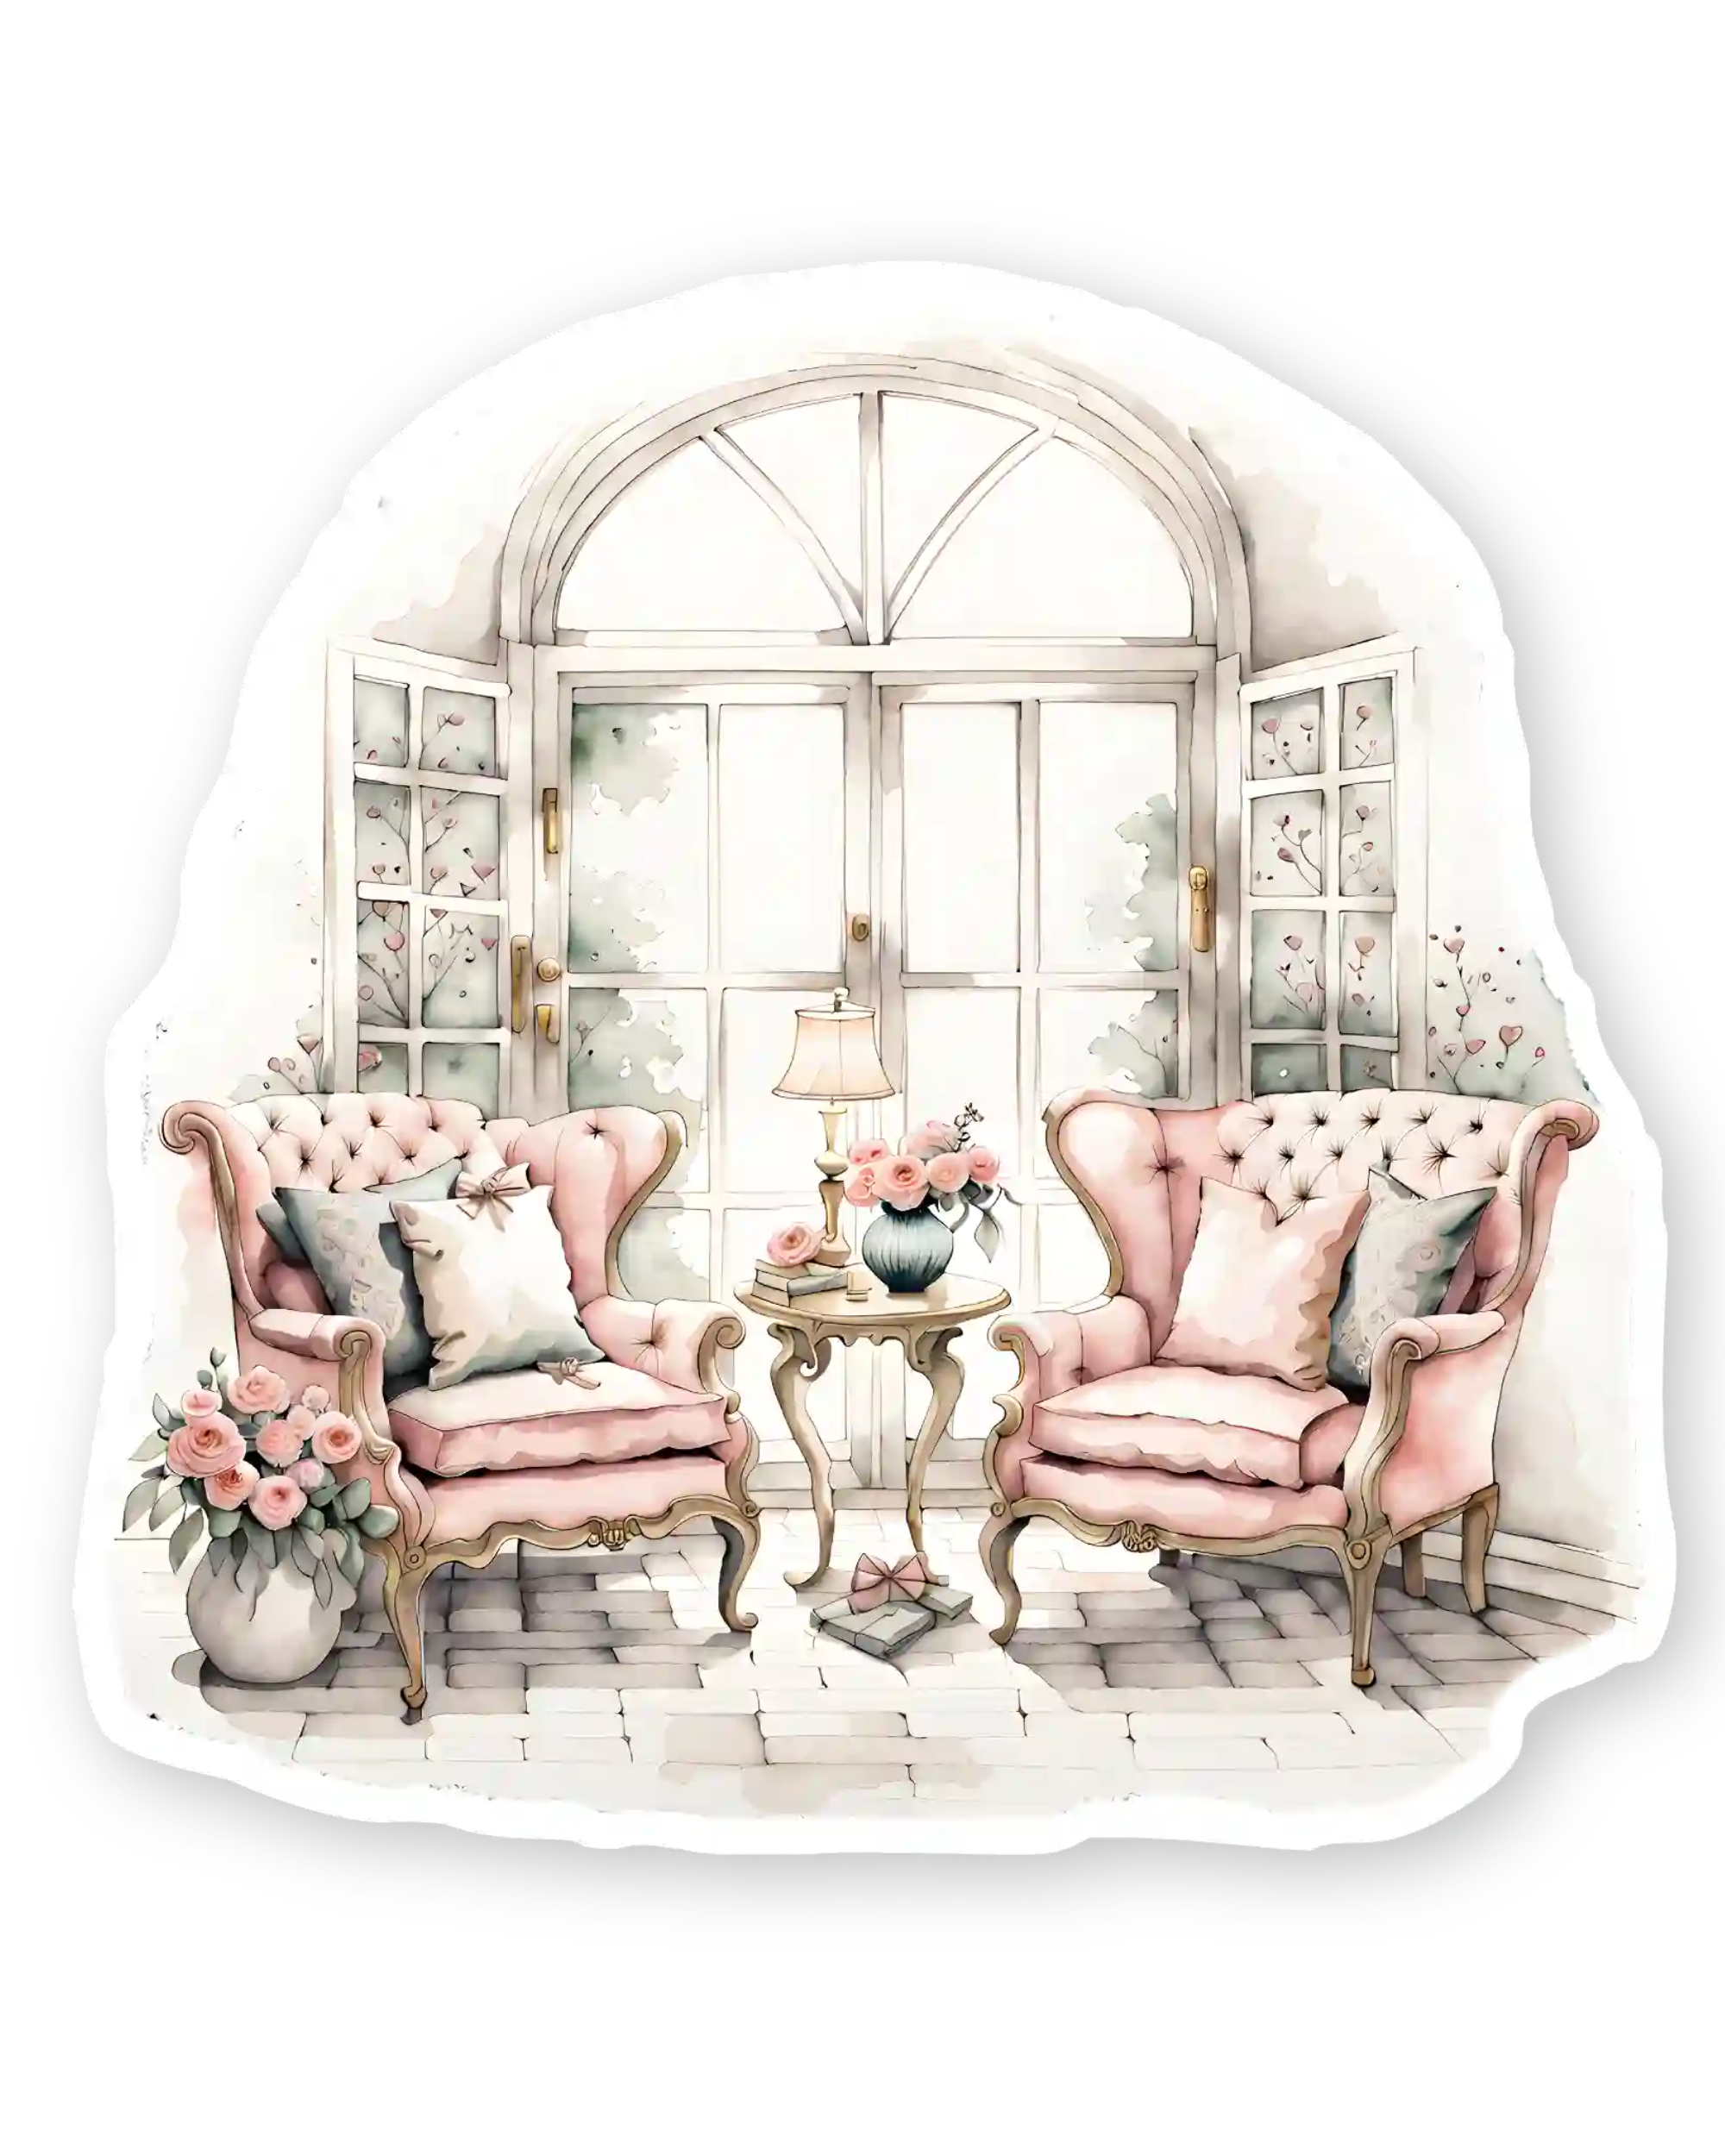 Set naljepnica za planer Everlasting, ilustracija pink fotelje pored otvorenog francuskog prozora